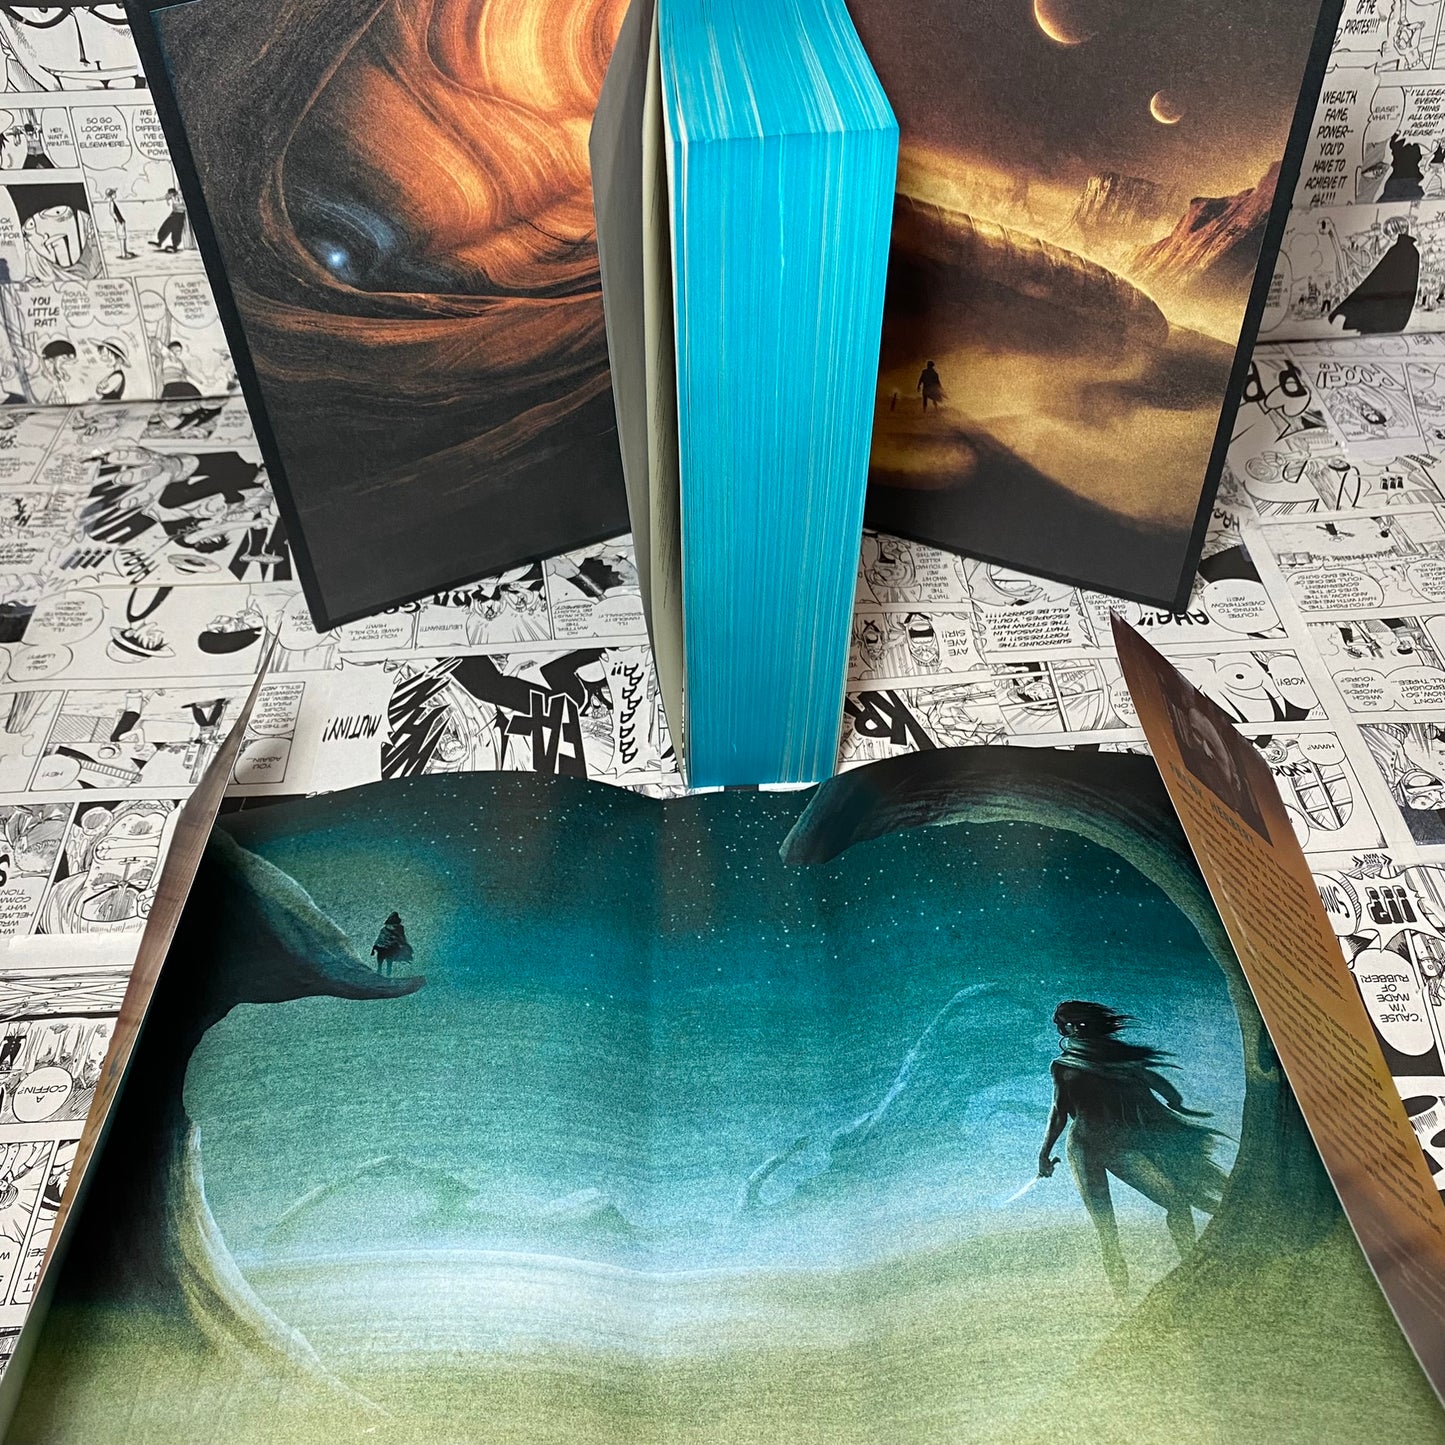 Dune Deluxe Edition Hardcover by Frank Herbert